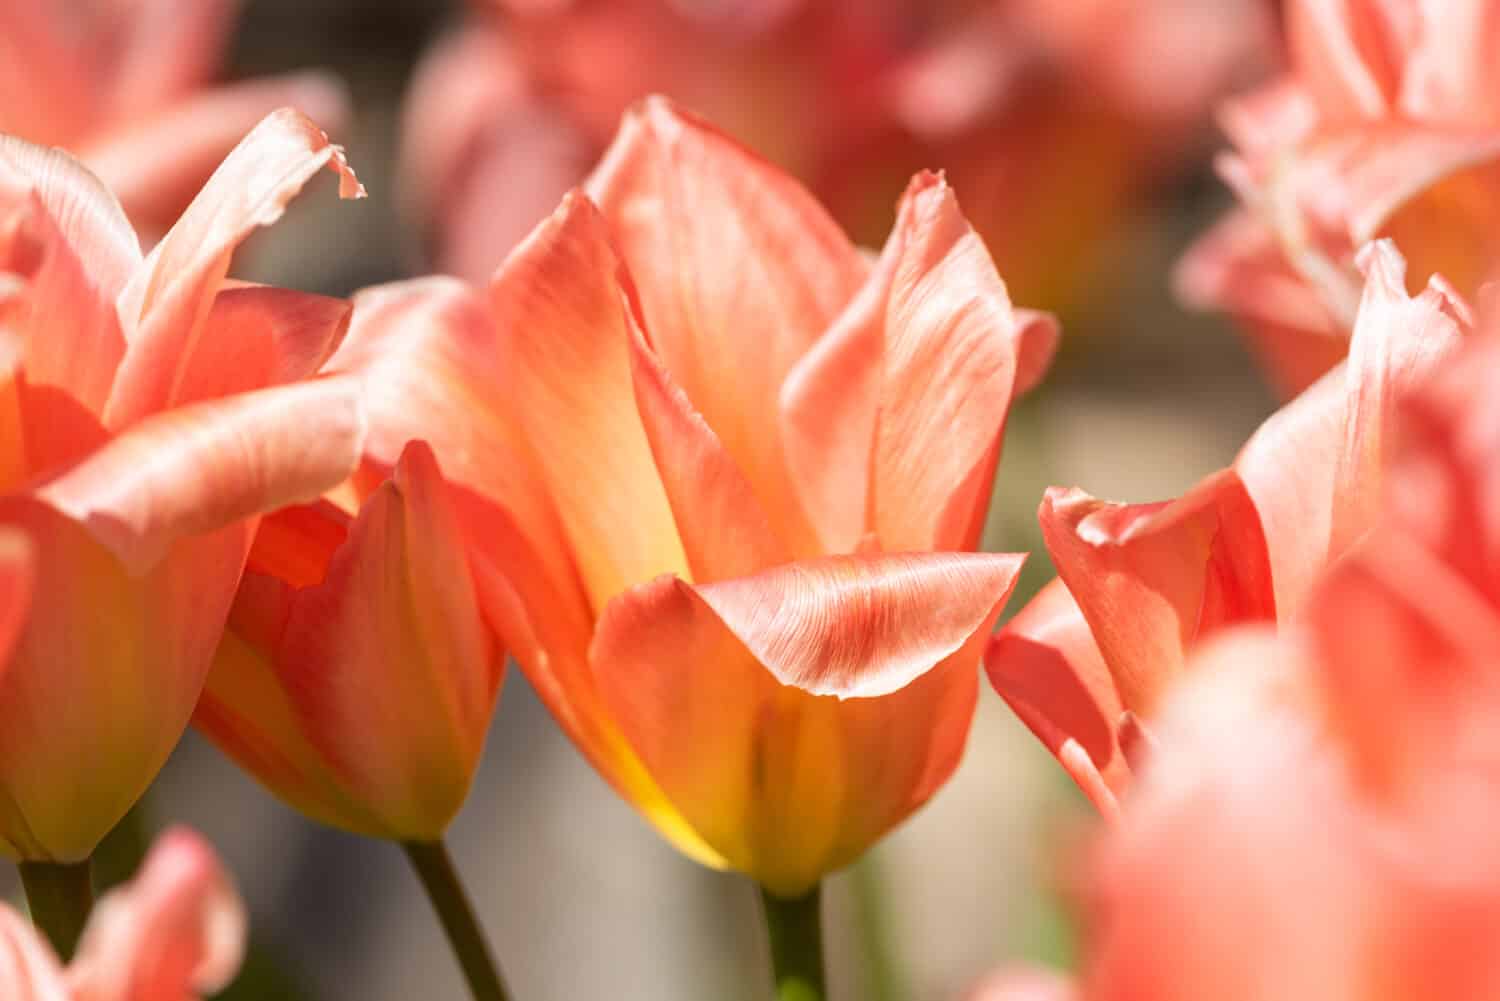 Apricot tulip, Tulipa 'Apricot Impression'